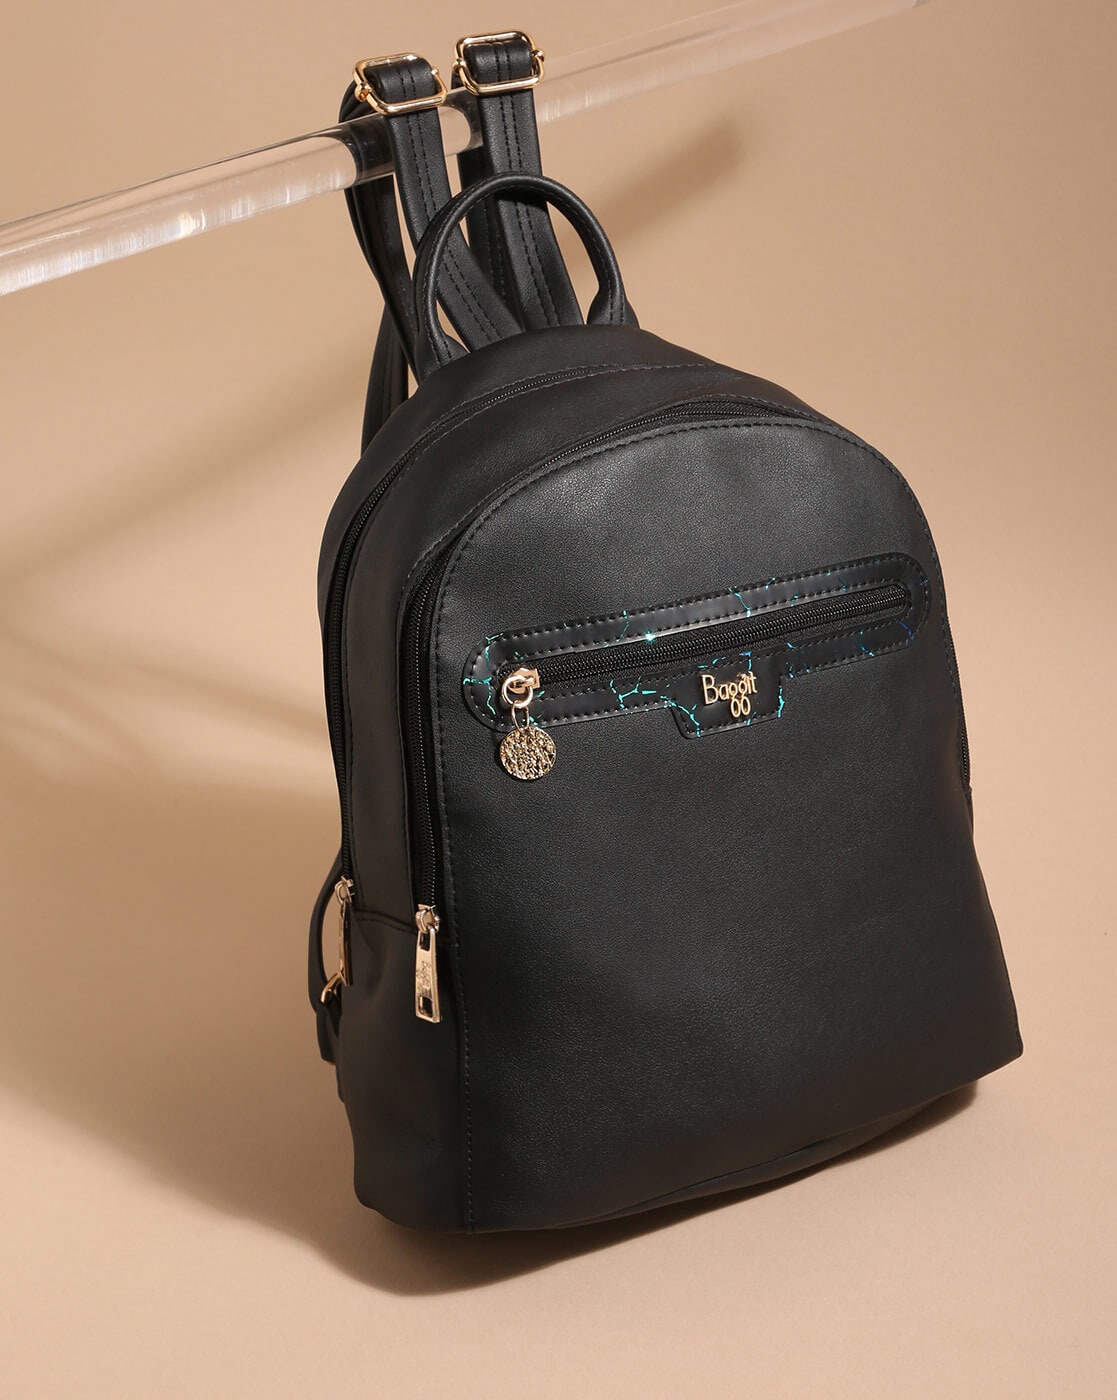 Buy Baggit Teal Printed Medium Backpack Online At Best Price @ Tata CLiQ